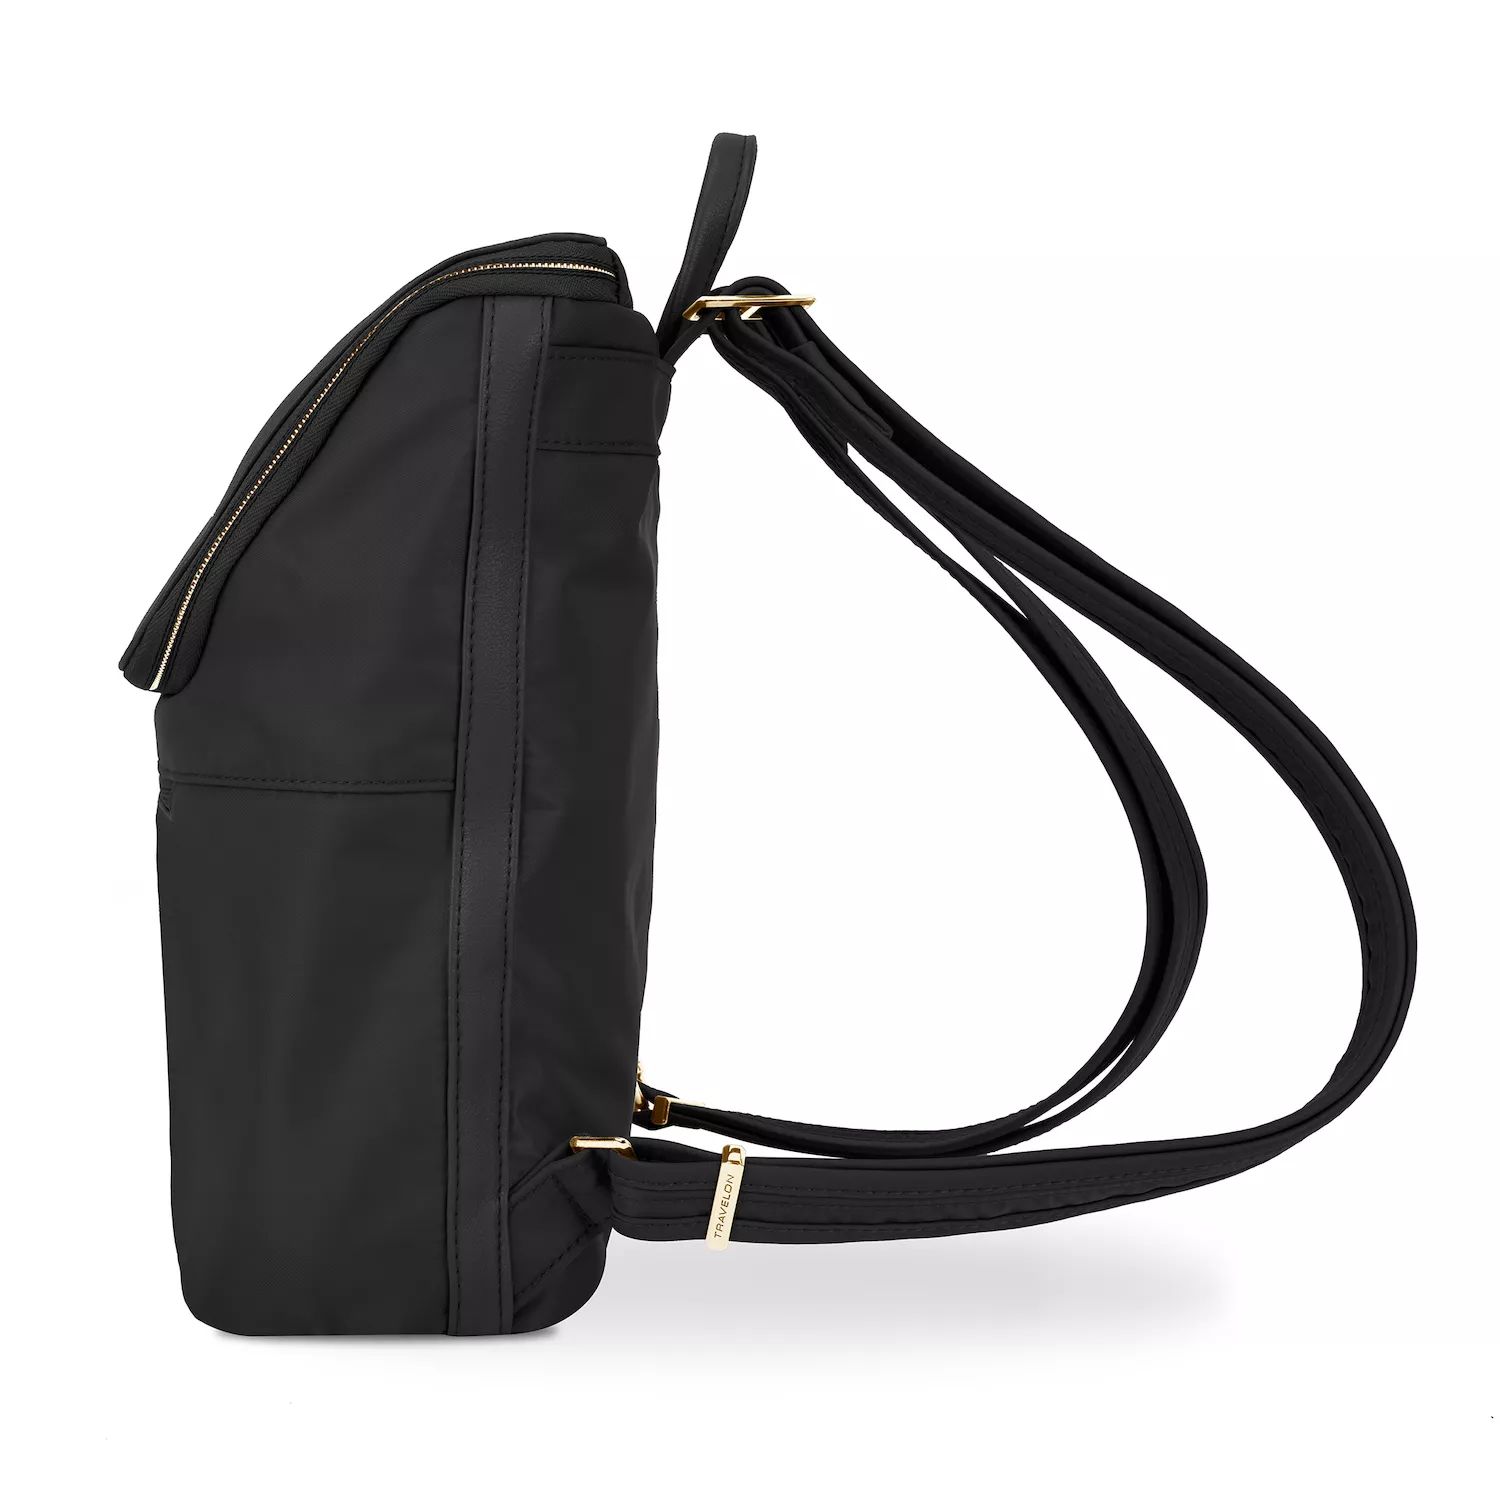 Рюкзак Travelon Addison с защитой от кражи, черный рюкзак женский из ткани оксфорд с защитой от кражи 2019